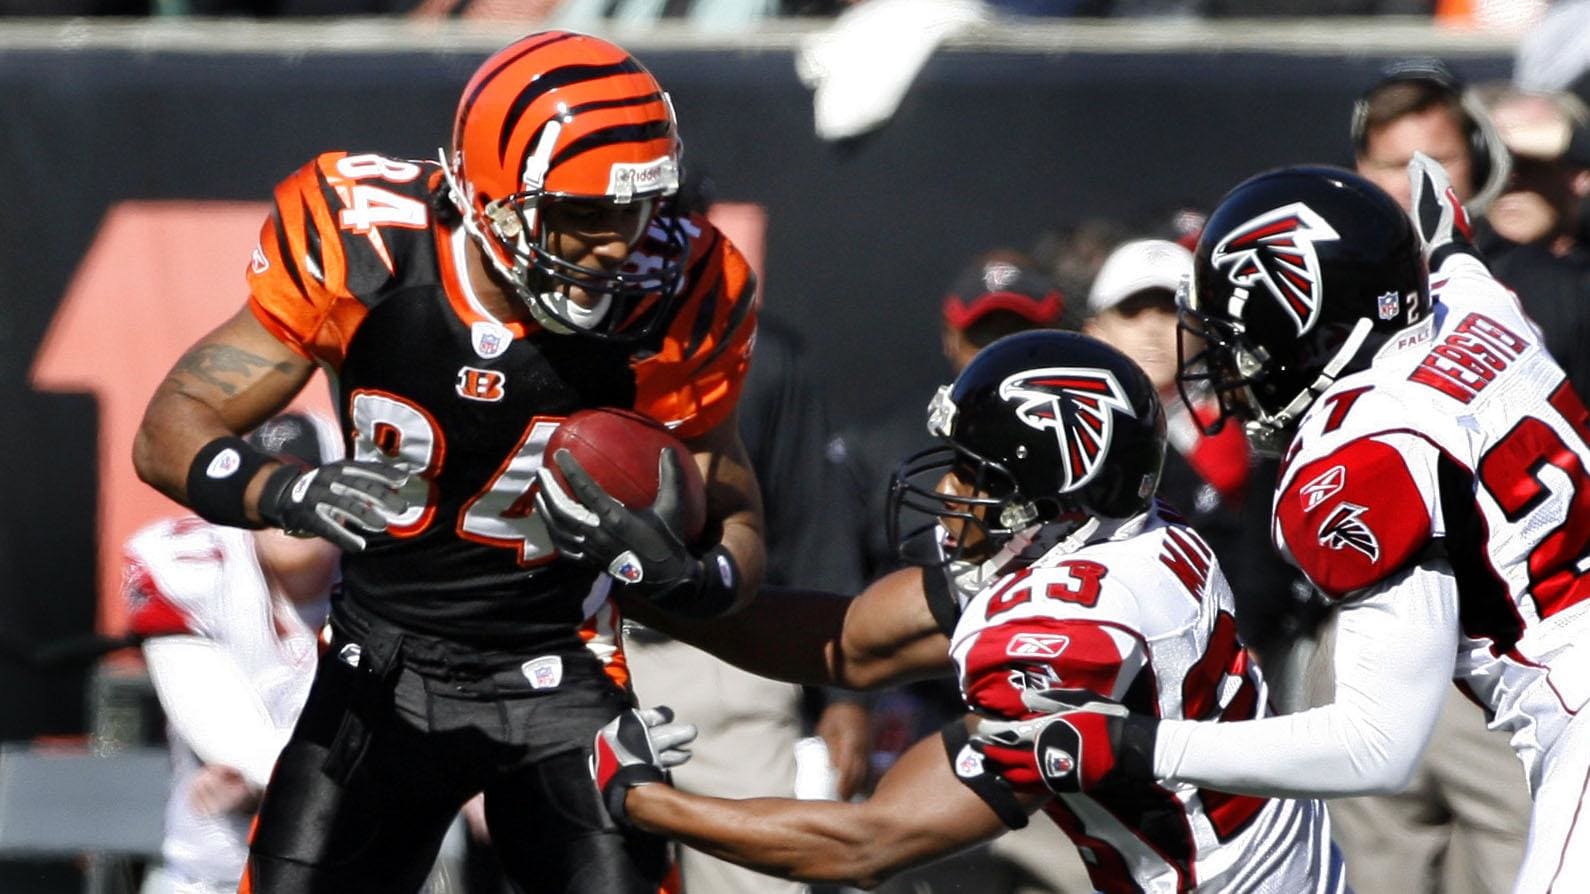 Cincinnati Bengals receiver (84) T.J. Houshmandzadeh vs. Atlanta Falcons